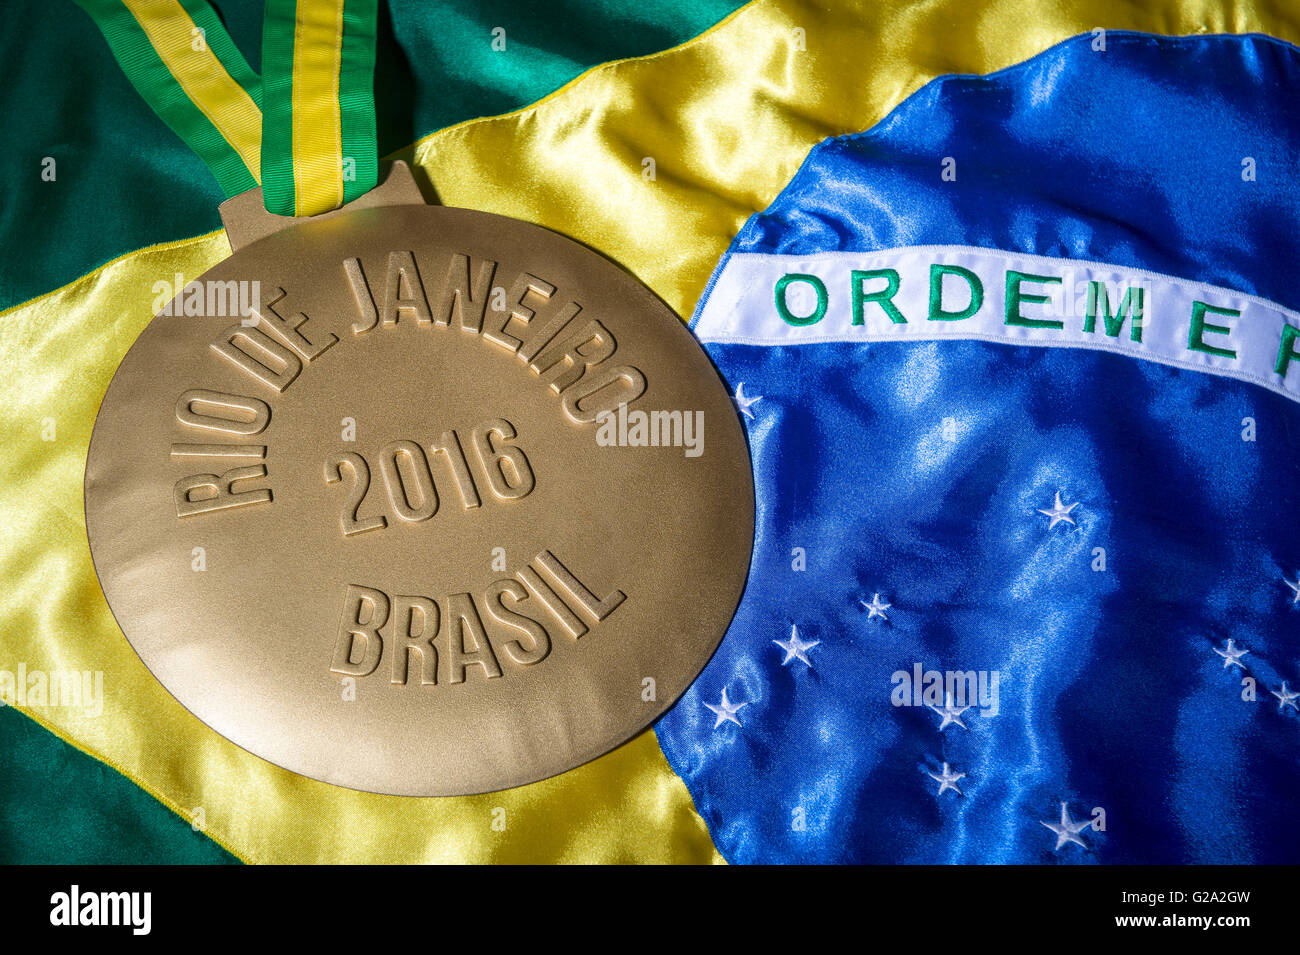 RIO DE JANEIRO - 3 de febrero de 2016: Gran medalla de oro conmemorativa de las Olimpiadas de 2016 (Juegos Olímpicos) se asienta en la bandera de Brasil. Foto de stock